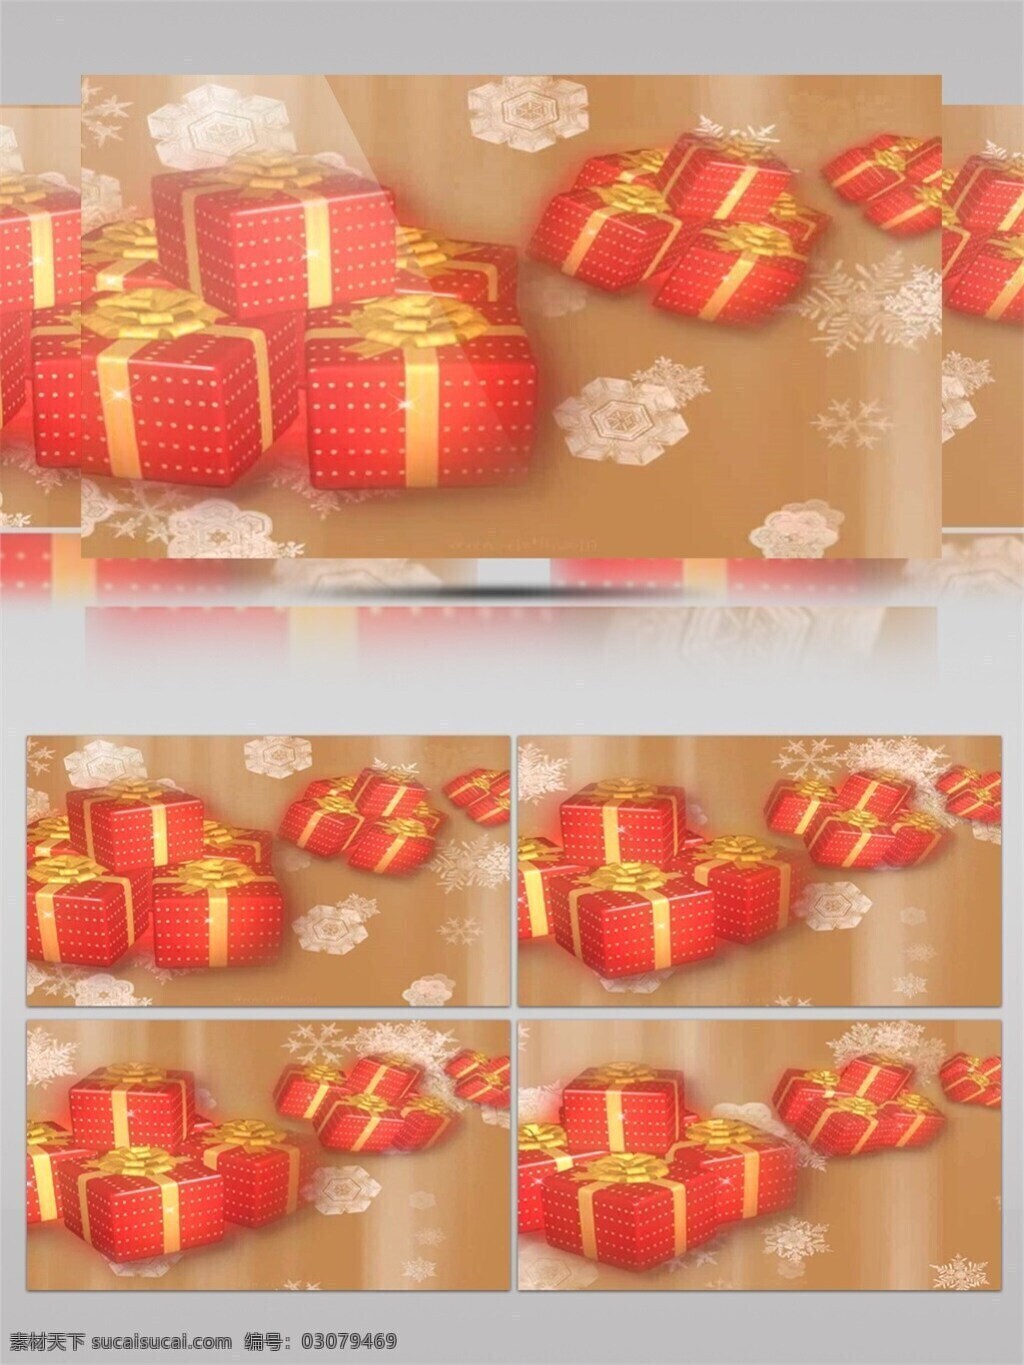 圣诞节 礼盒 视频 红色礼盒 节日壁纸 节日 特效 节日喜庆 圣诞节礼物 圣诞节庆祝